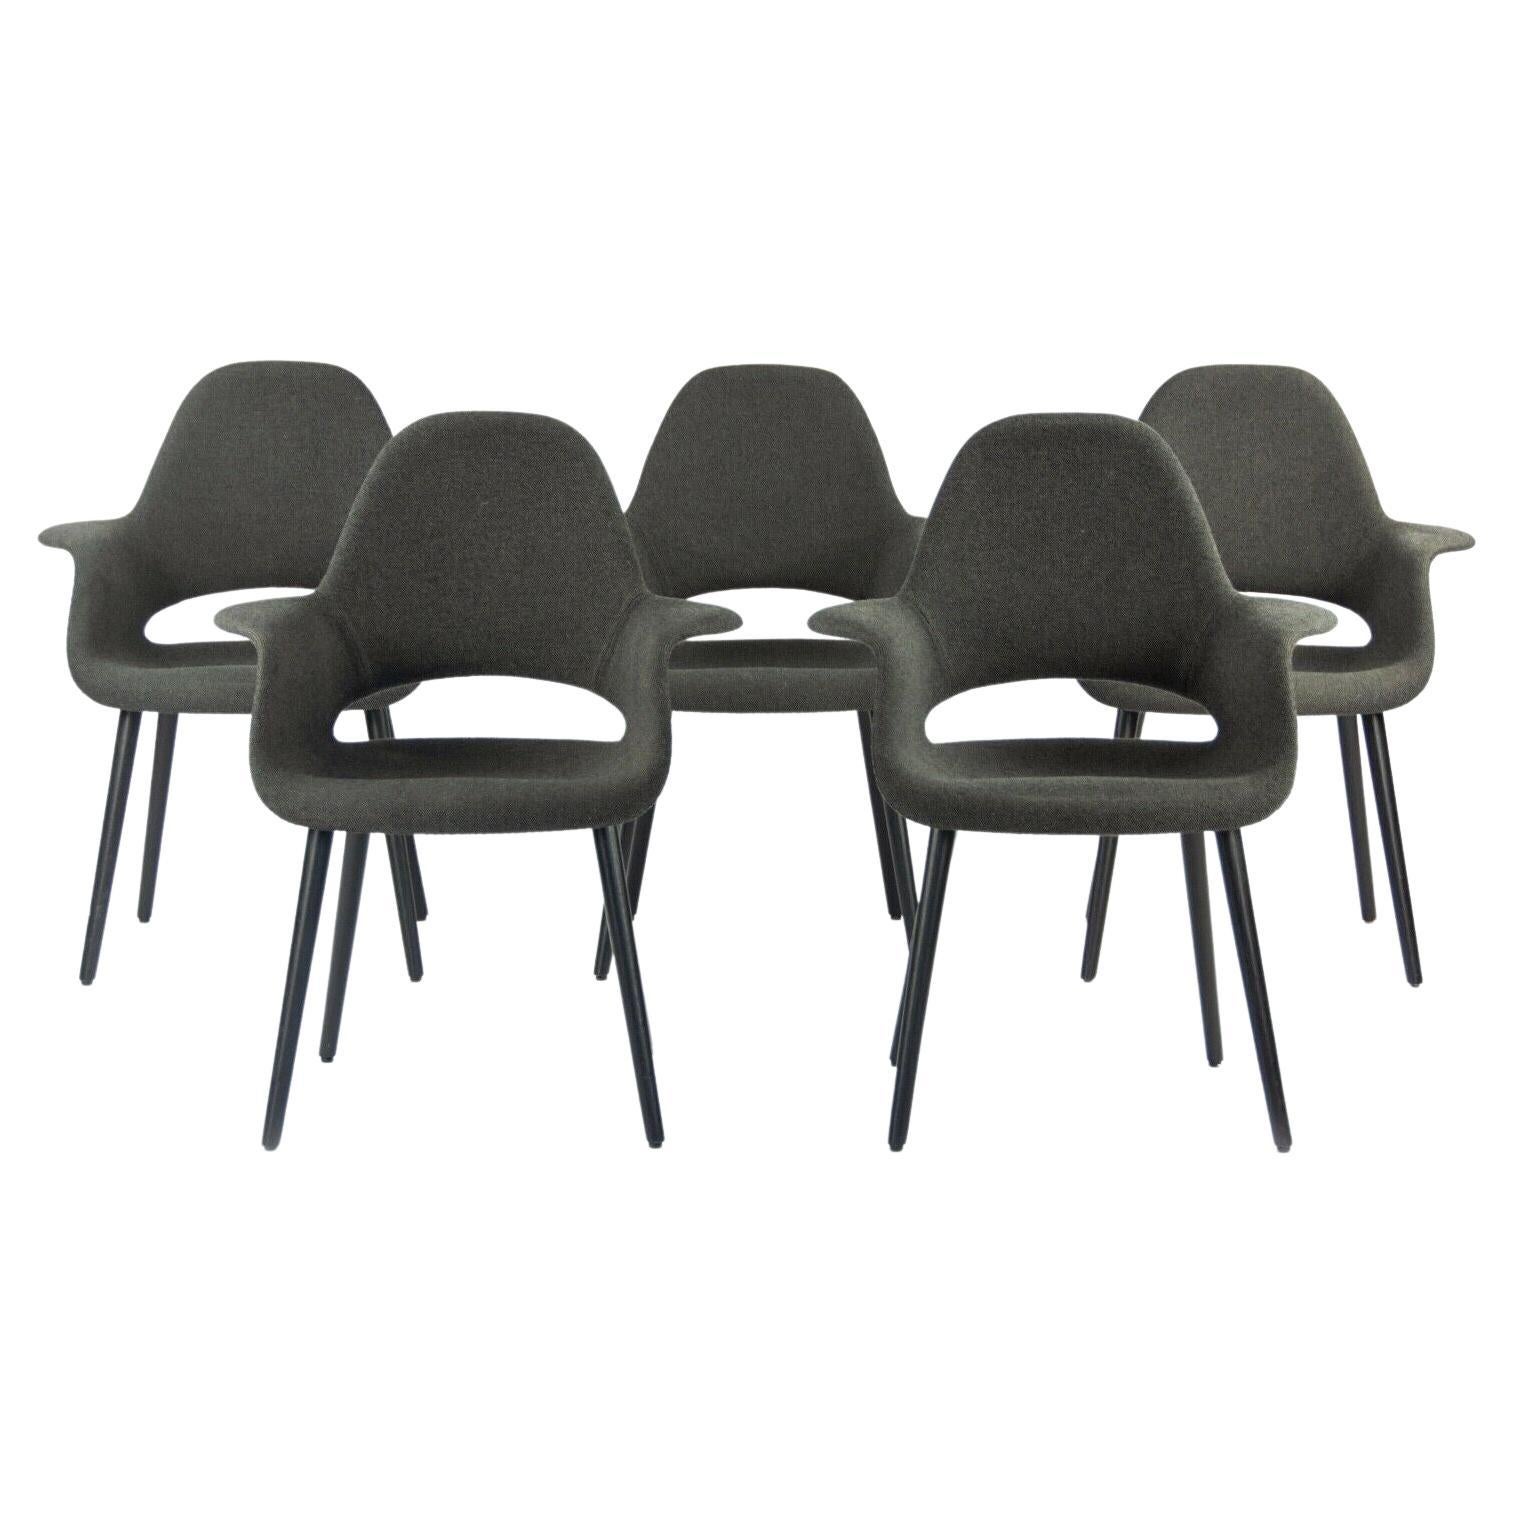 2010er Charles Eames & Eero Saarinen Bio-Stühle von Vitra mit dunkelgrauem Stoff